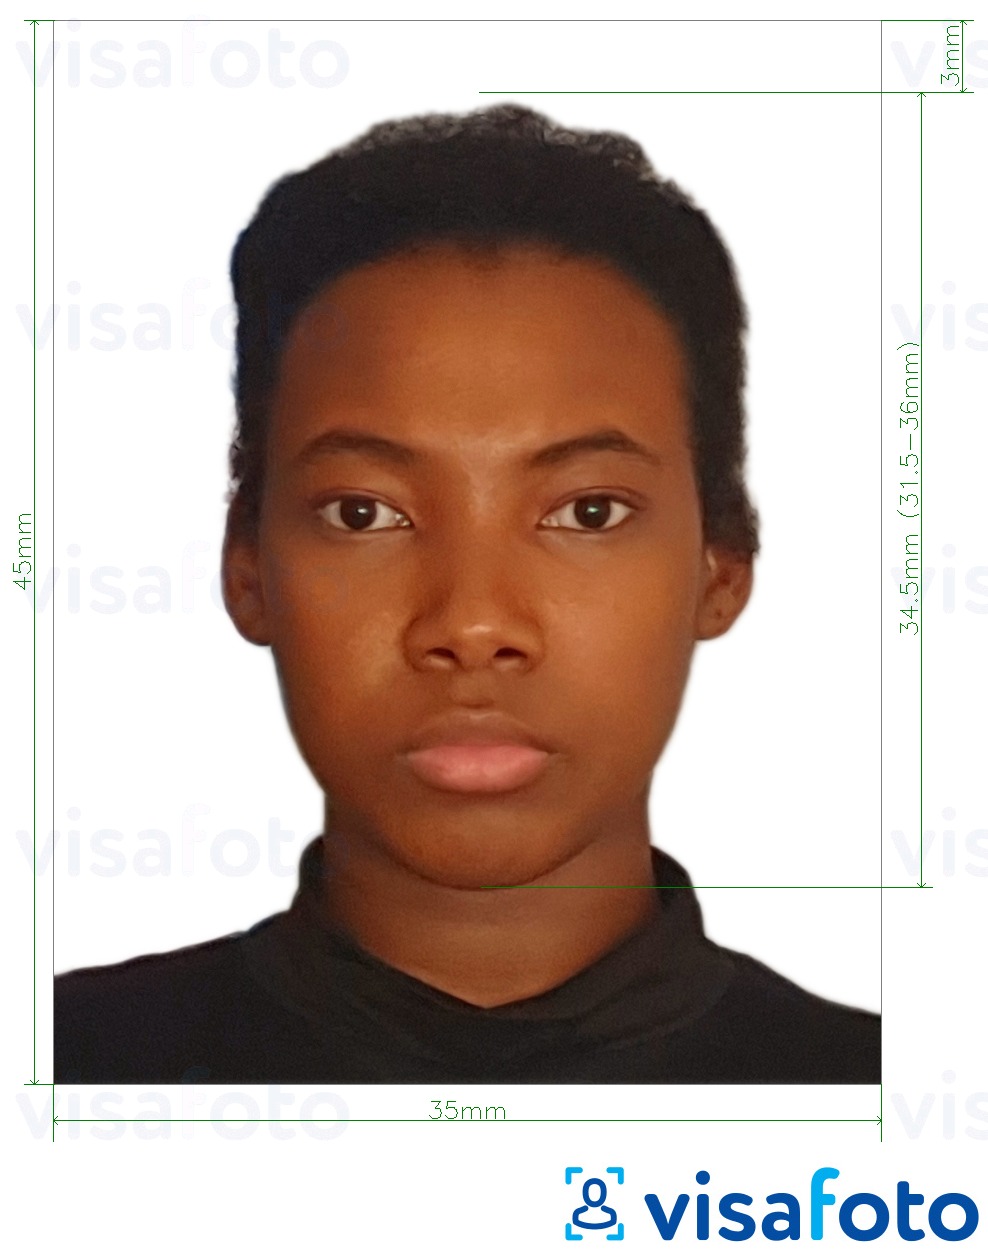 Contoh foto untuk Mozambique visa 35x45 mm (3.5x4.5 cm) dengan spesifikasi saiz yang tepat.